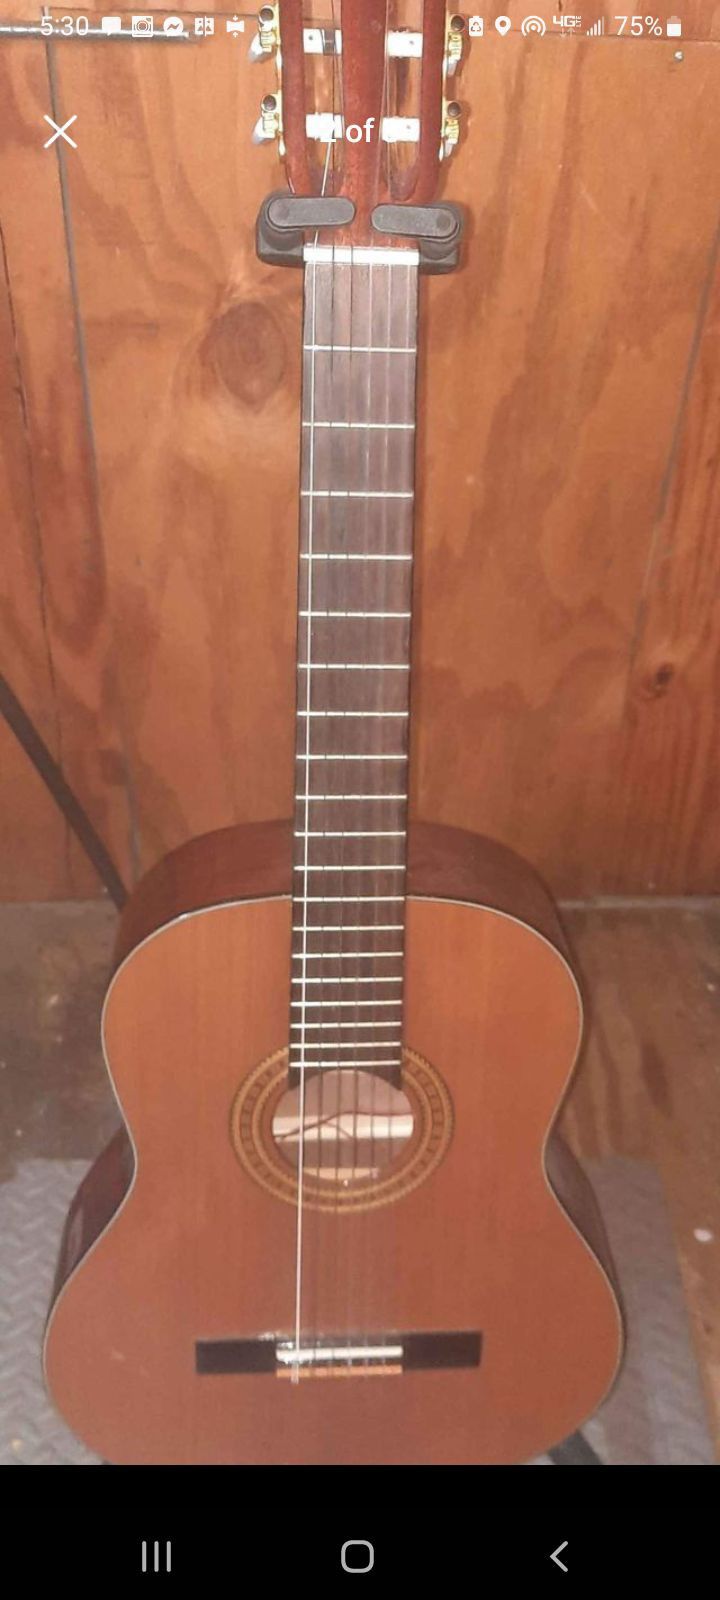 Espana Solud Cedar Classical Guitar W/pickup 